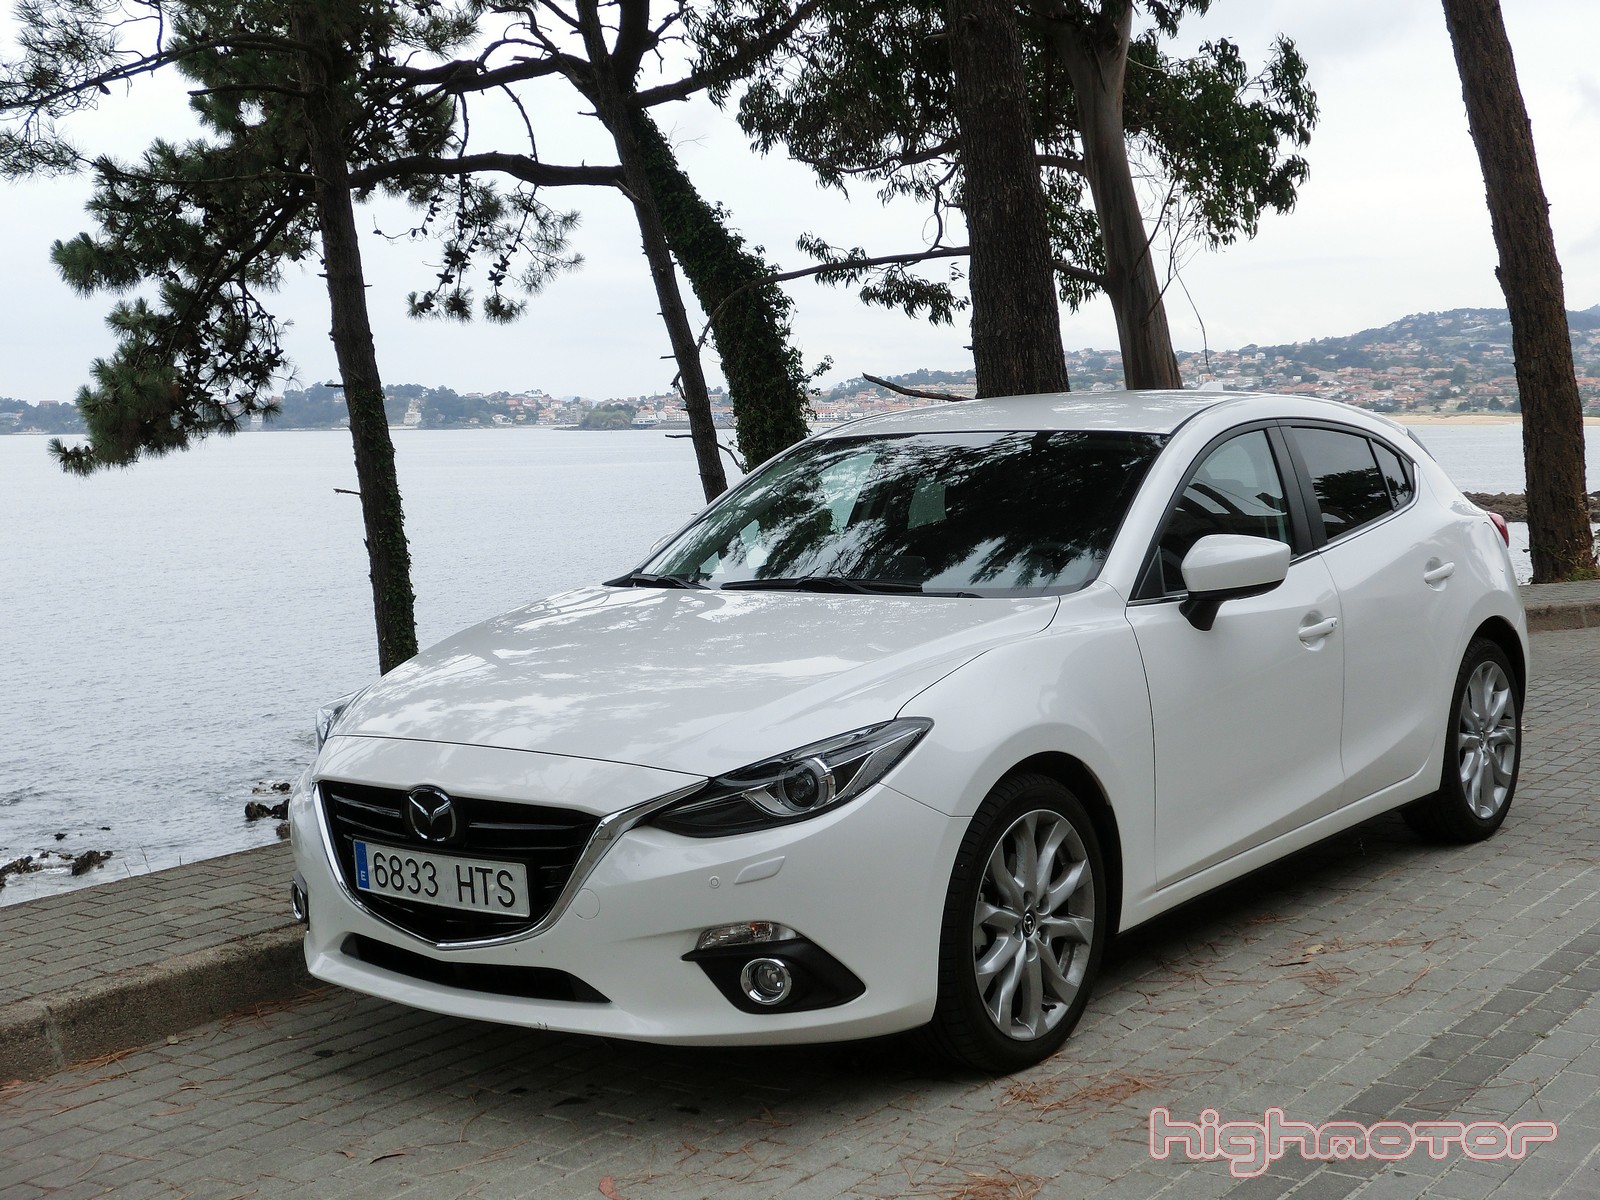 Mazda 3 2.0 Skyactiv-G 120 CV Aut. Luxury, prueba (Motor, comportamiento y consumo)